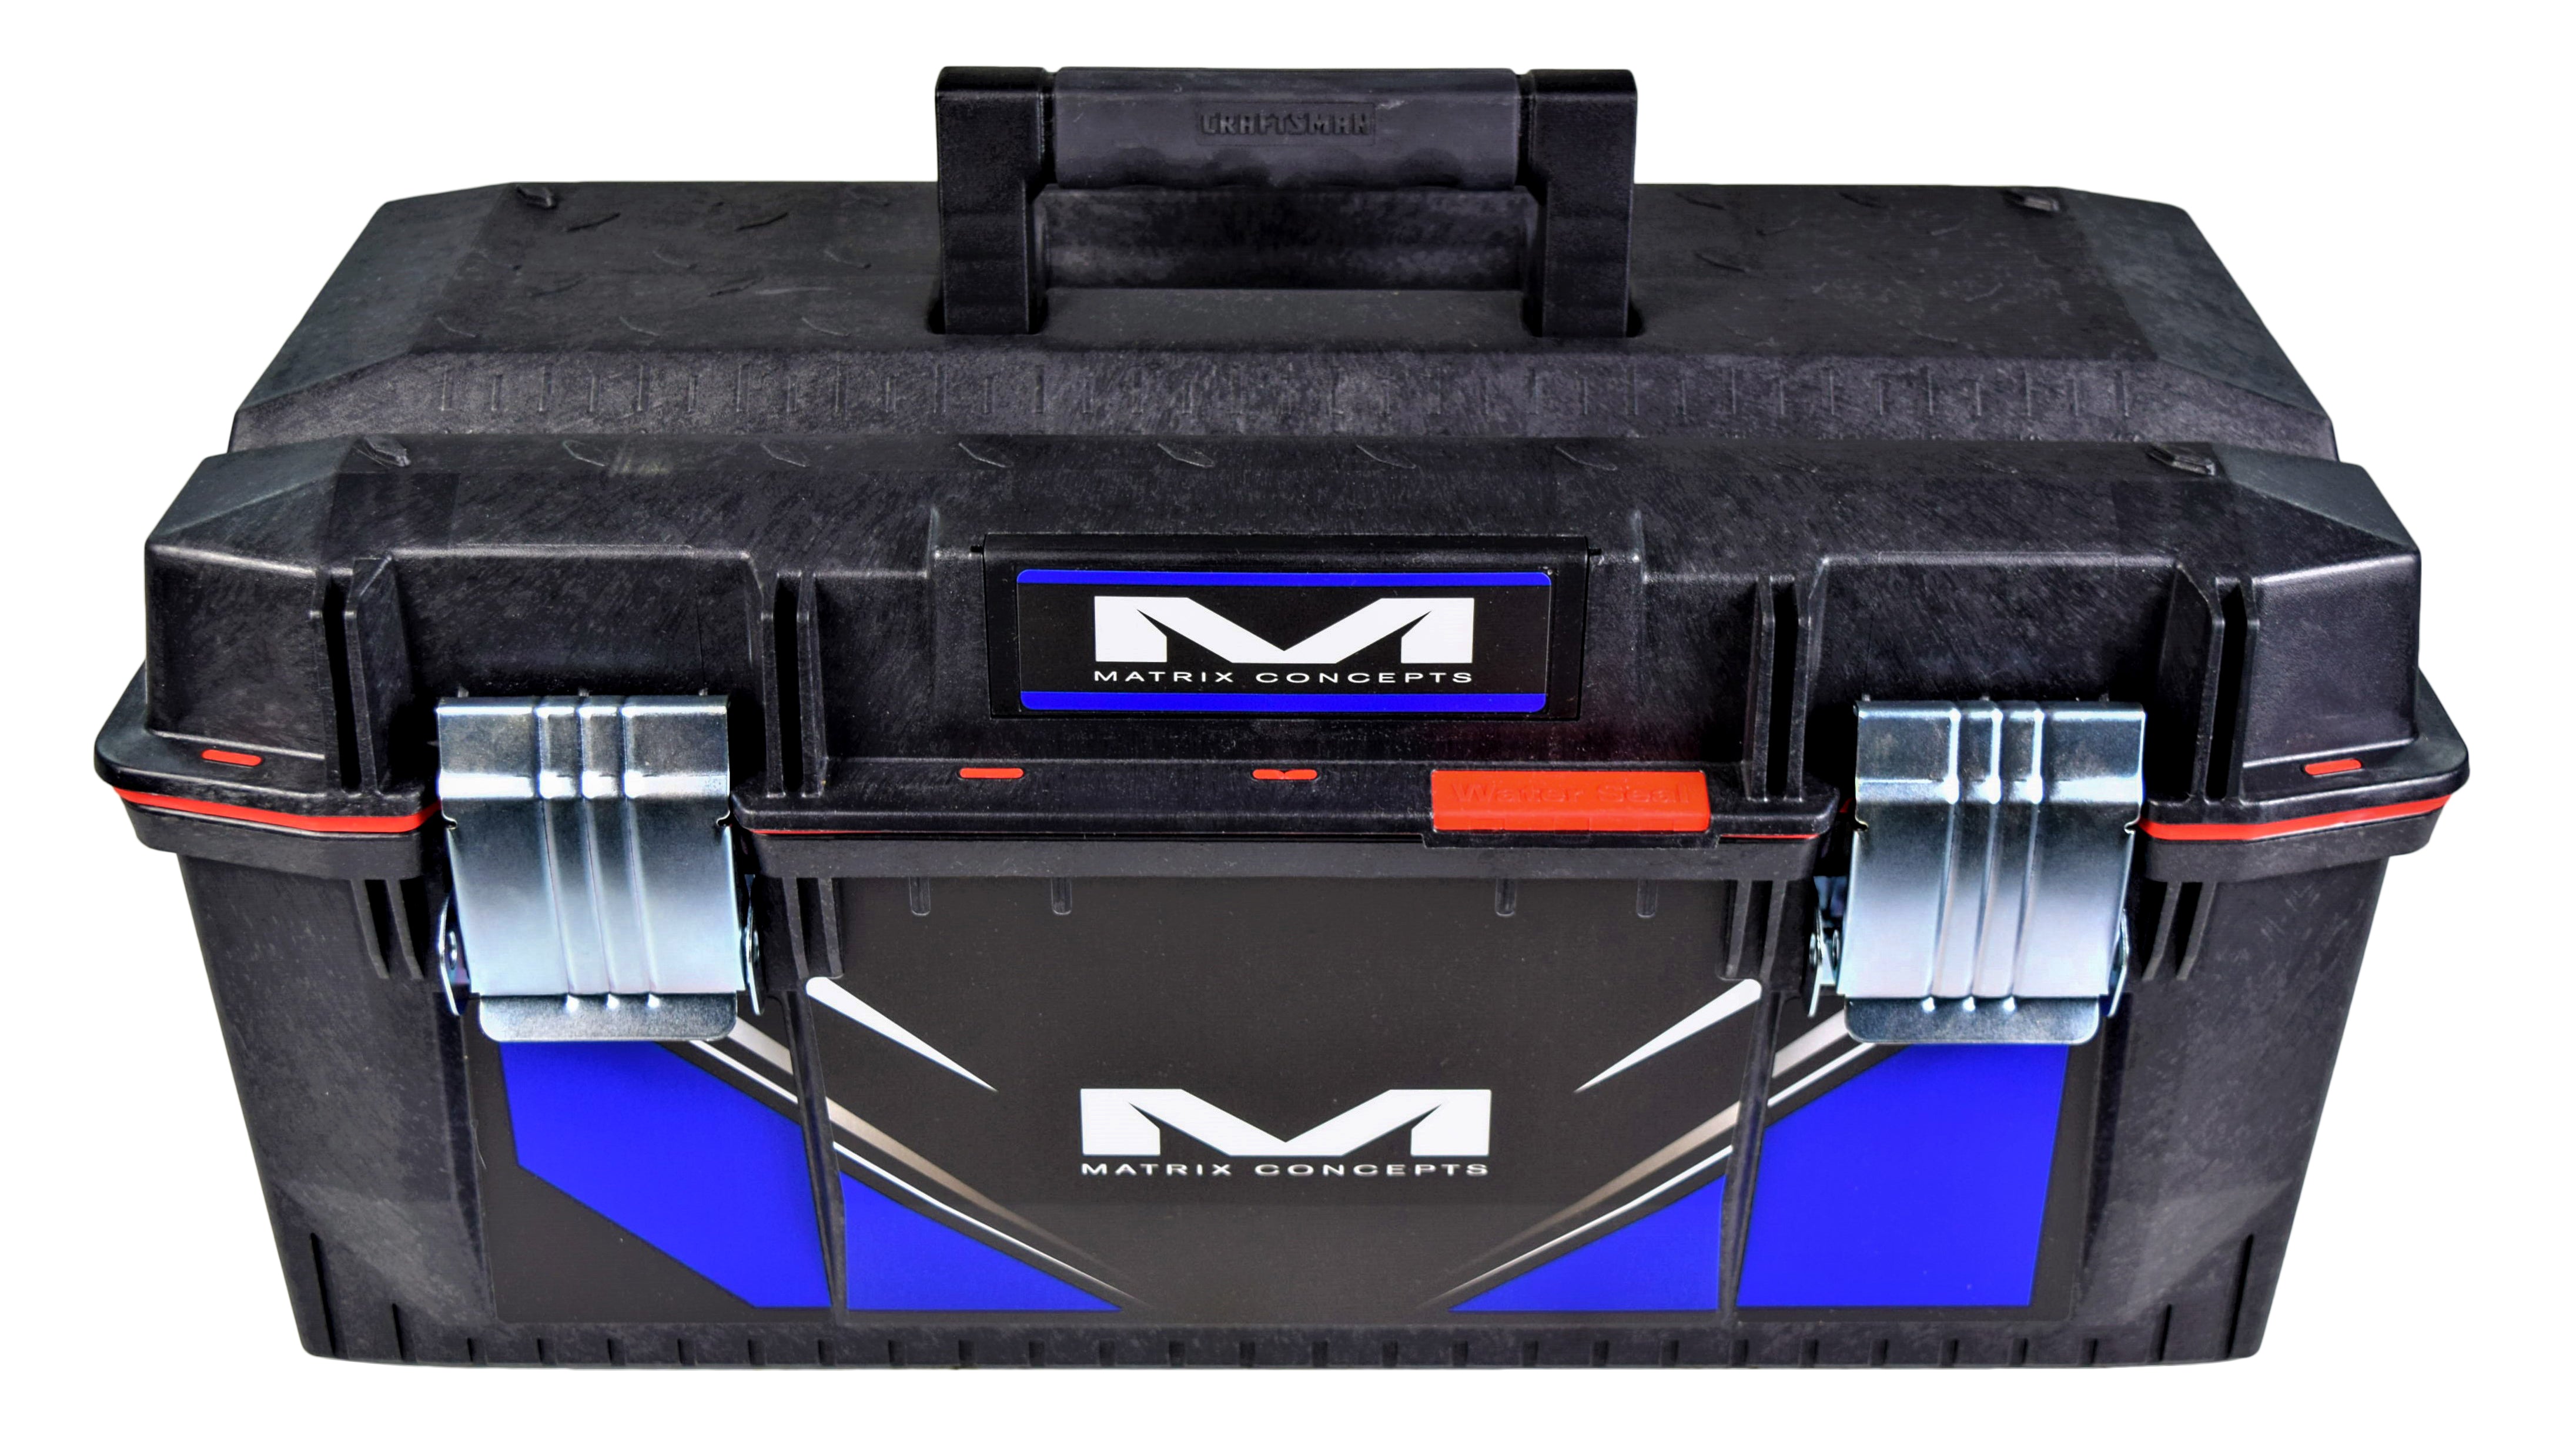 Matrix Concepts M11 RACE MECHANIC BOX Black/Blue